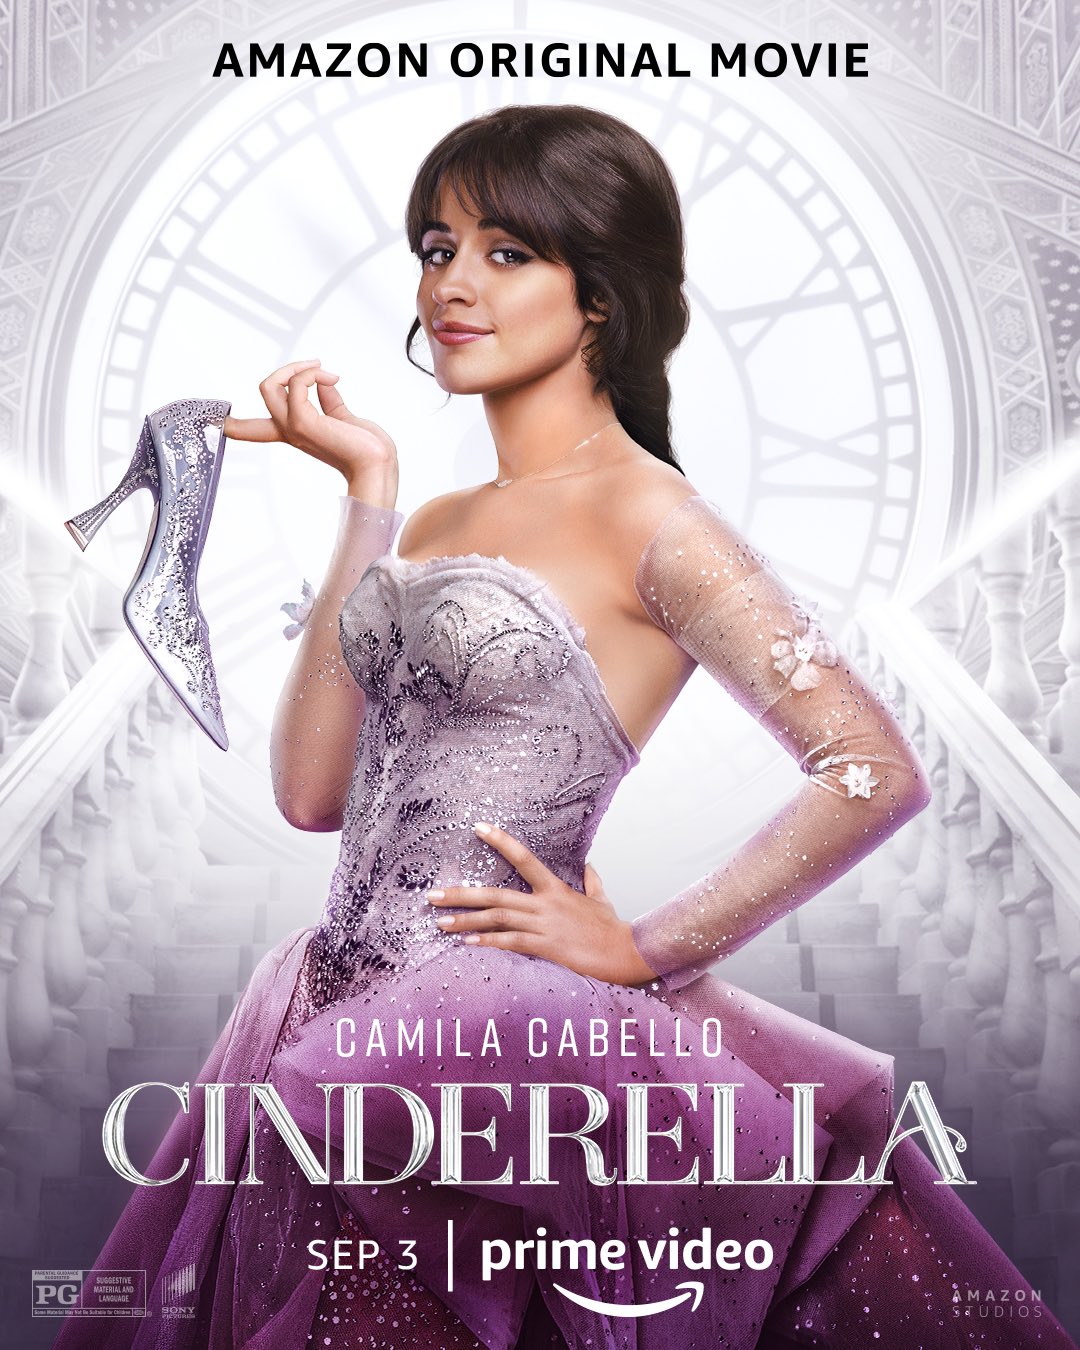 Tudo que você precisa saber sobre "Cinderella", de Camila Cabello 